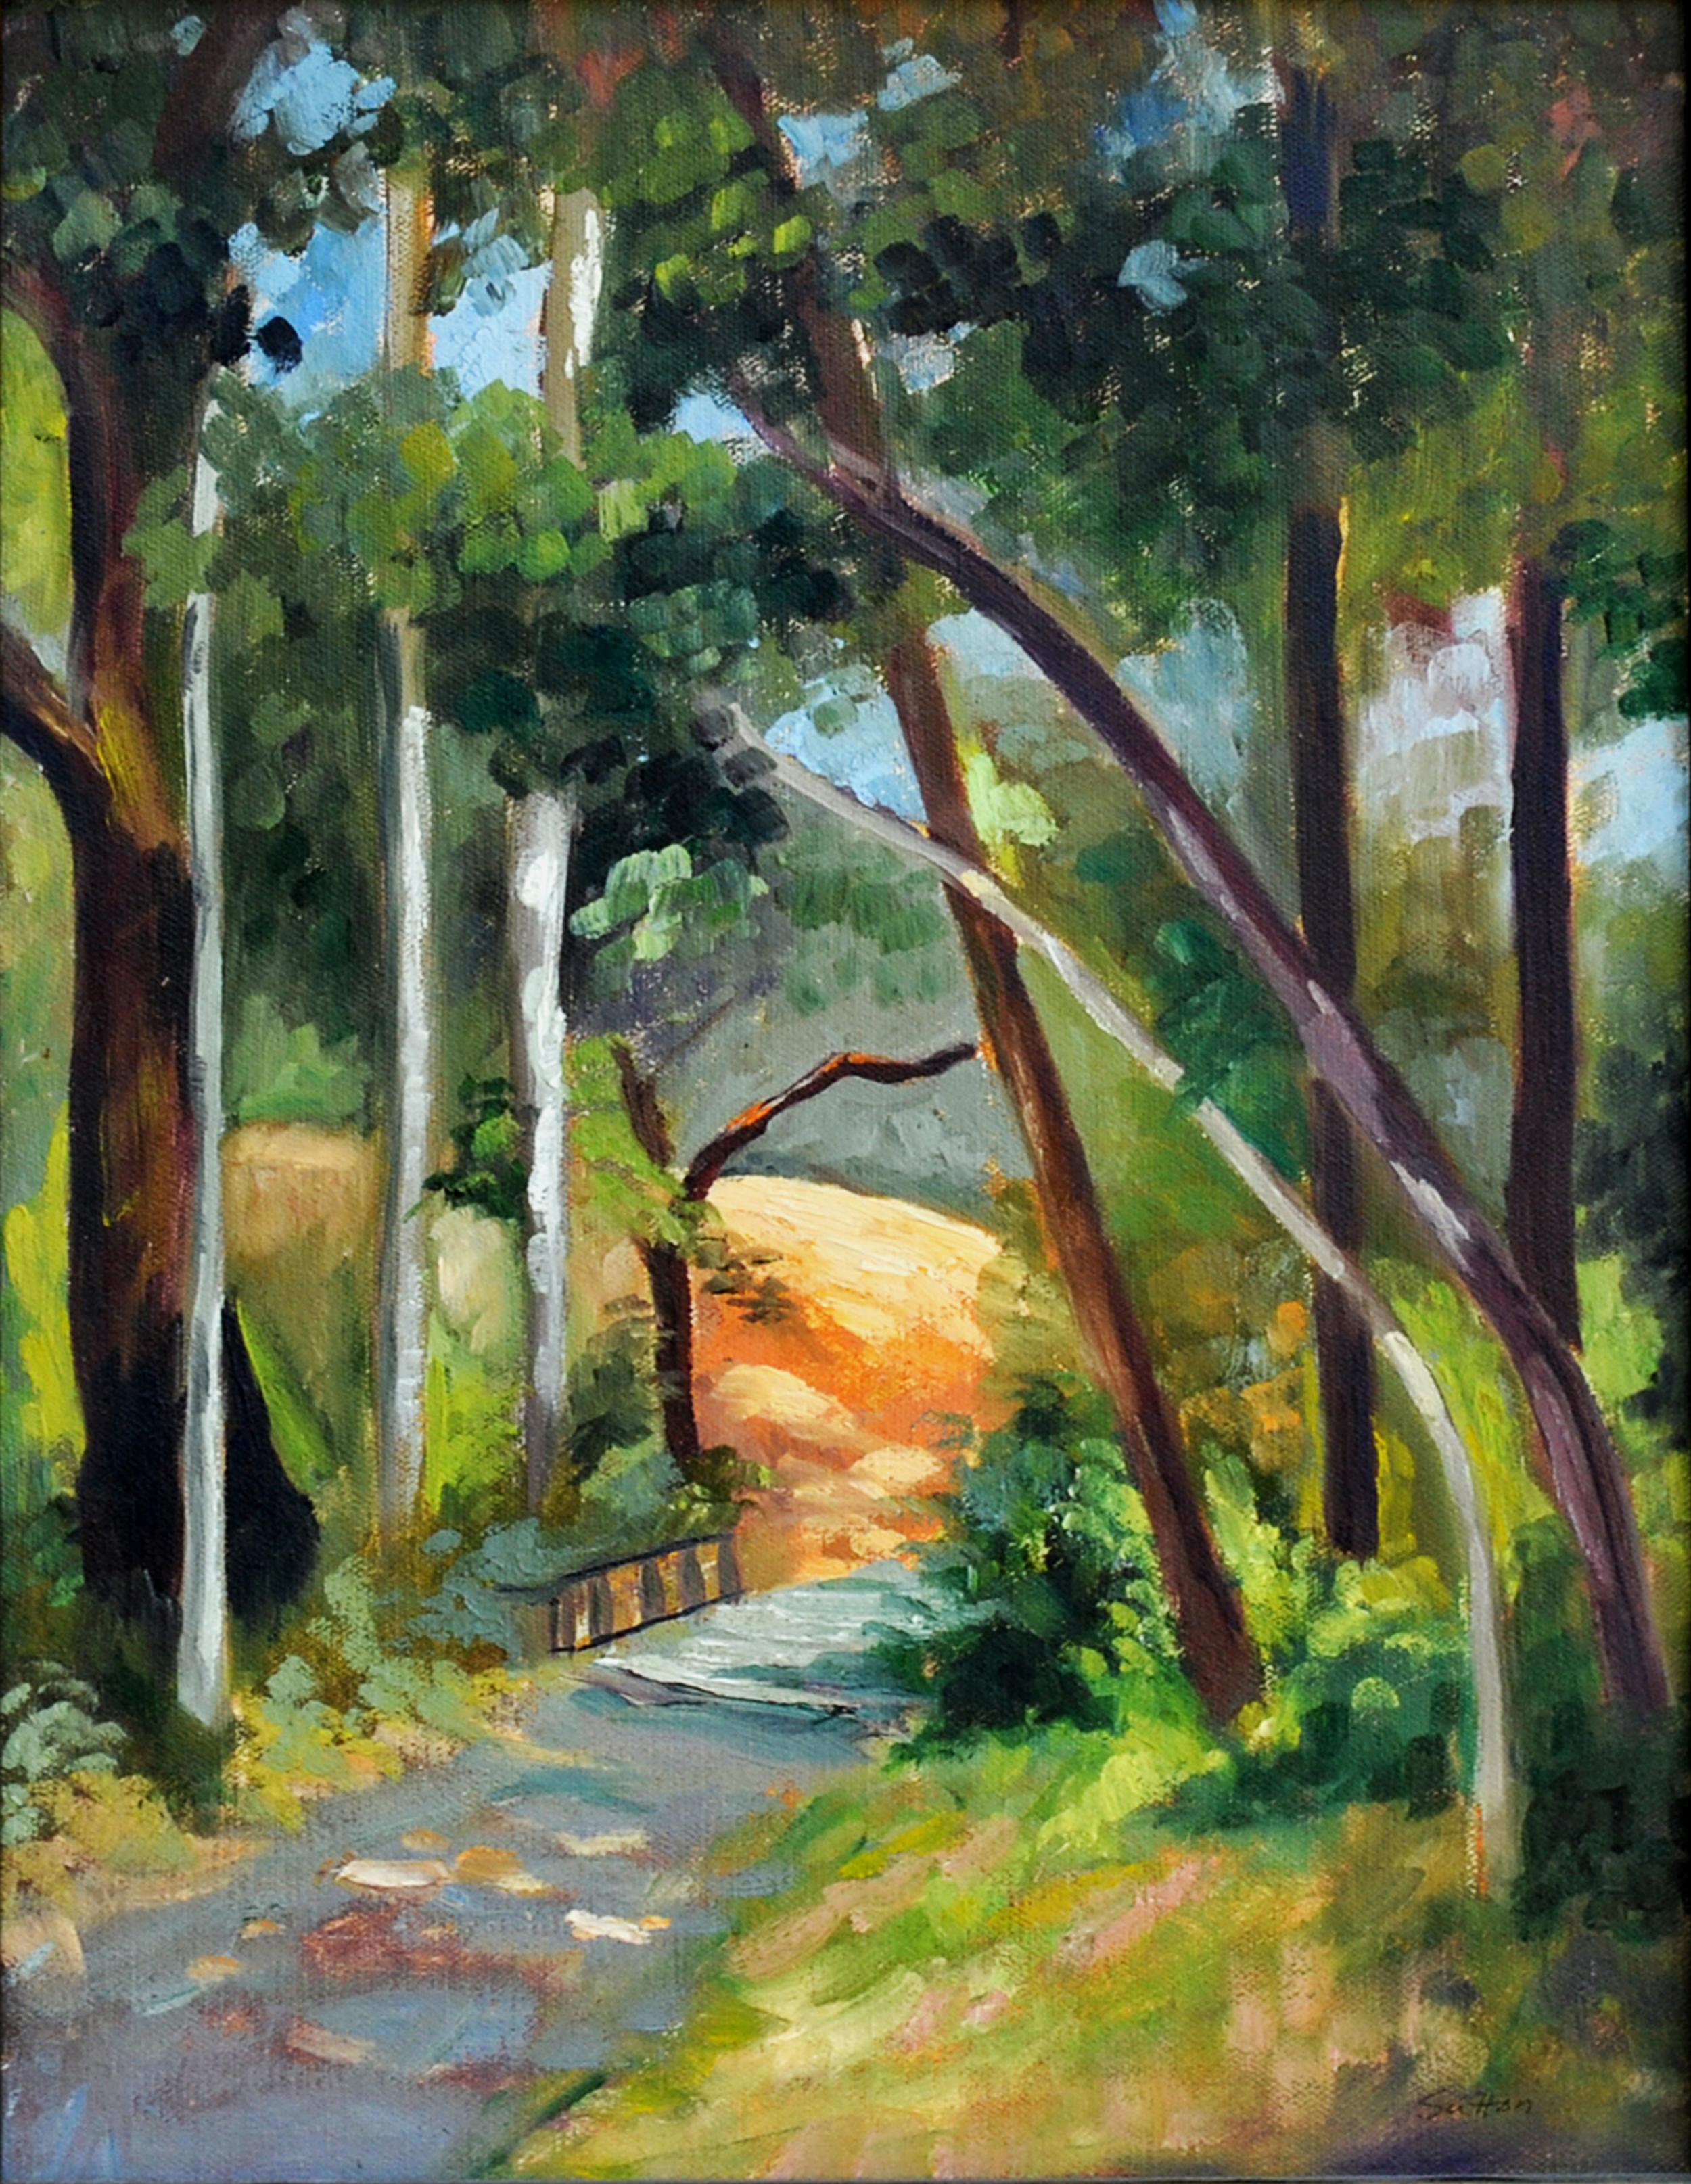 Sutton Landscape Painting - Golden Gate Park Path Landscape